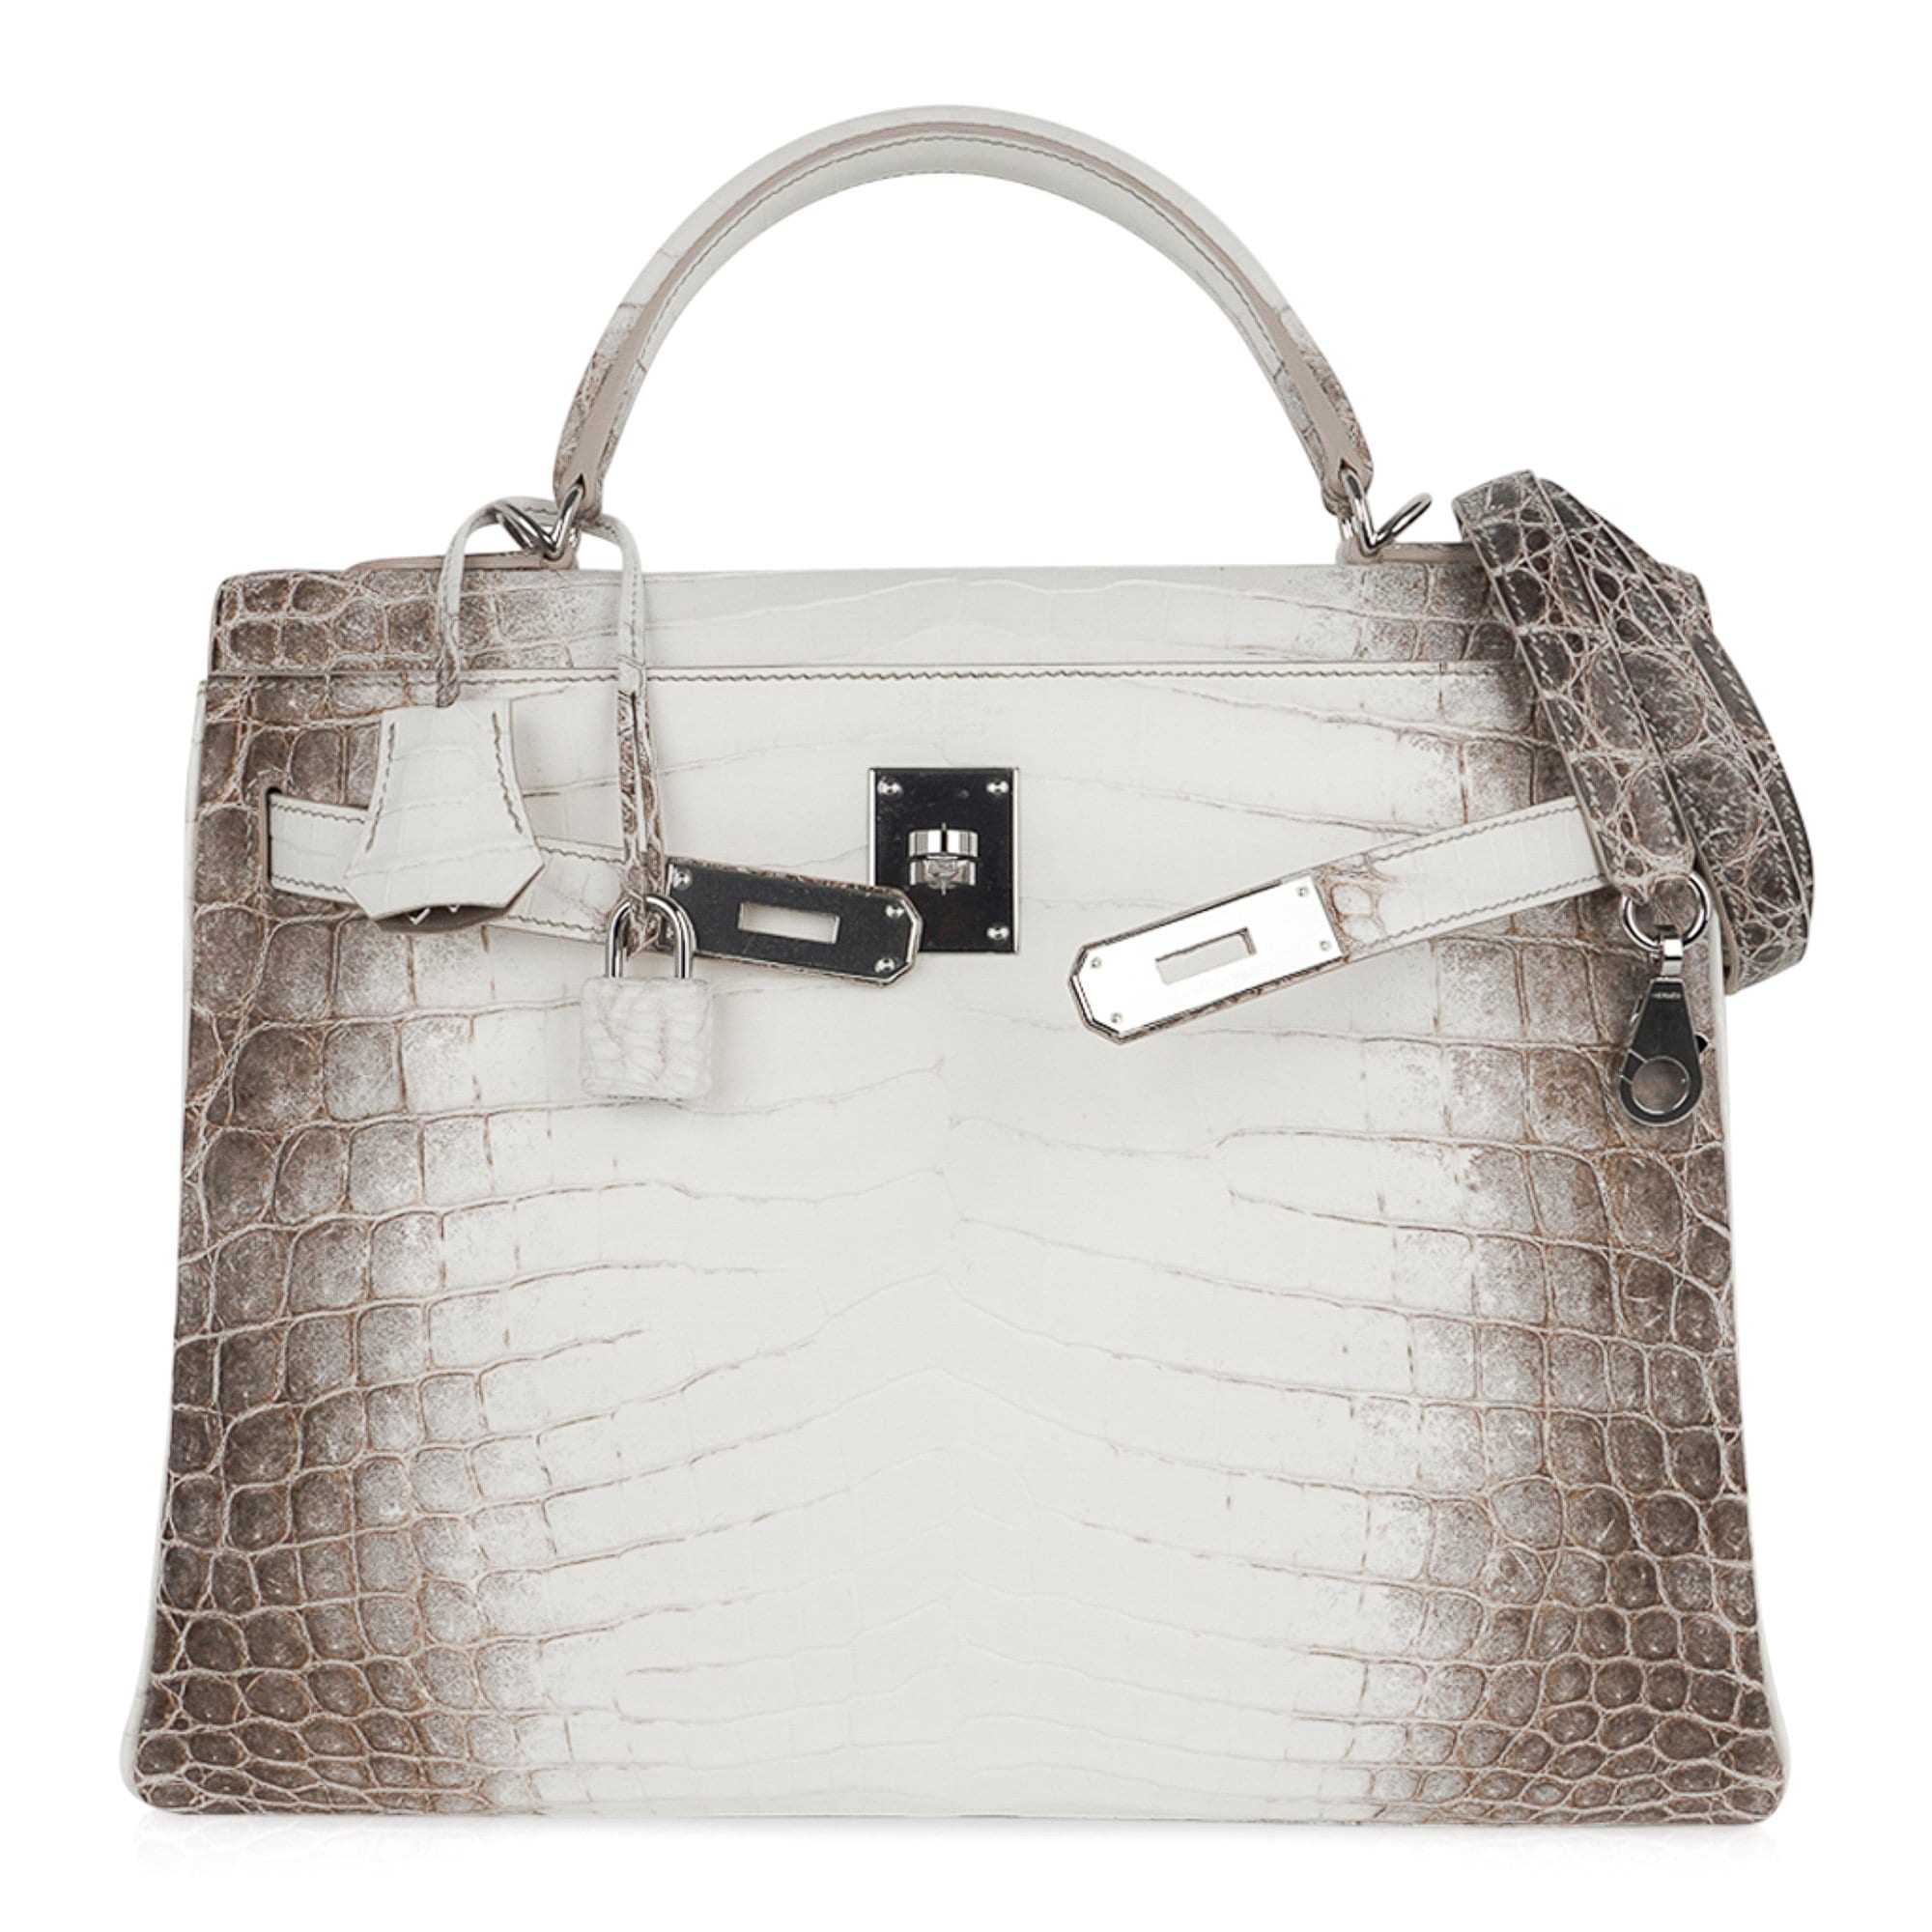 Hermes kelly bag, Kelly bag, Hermes handbags